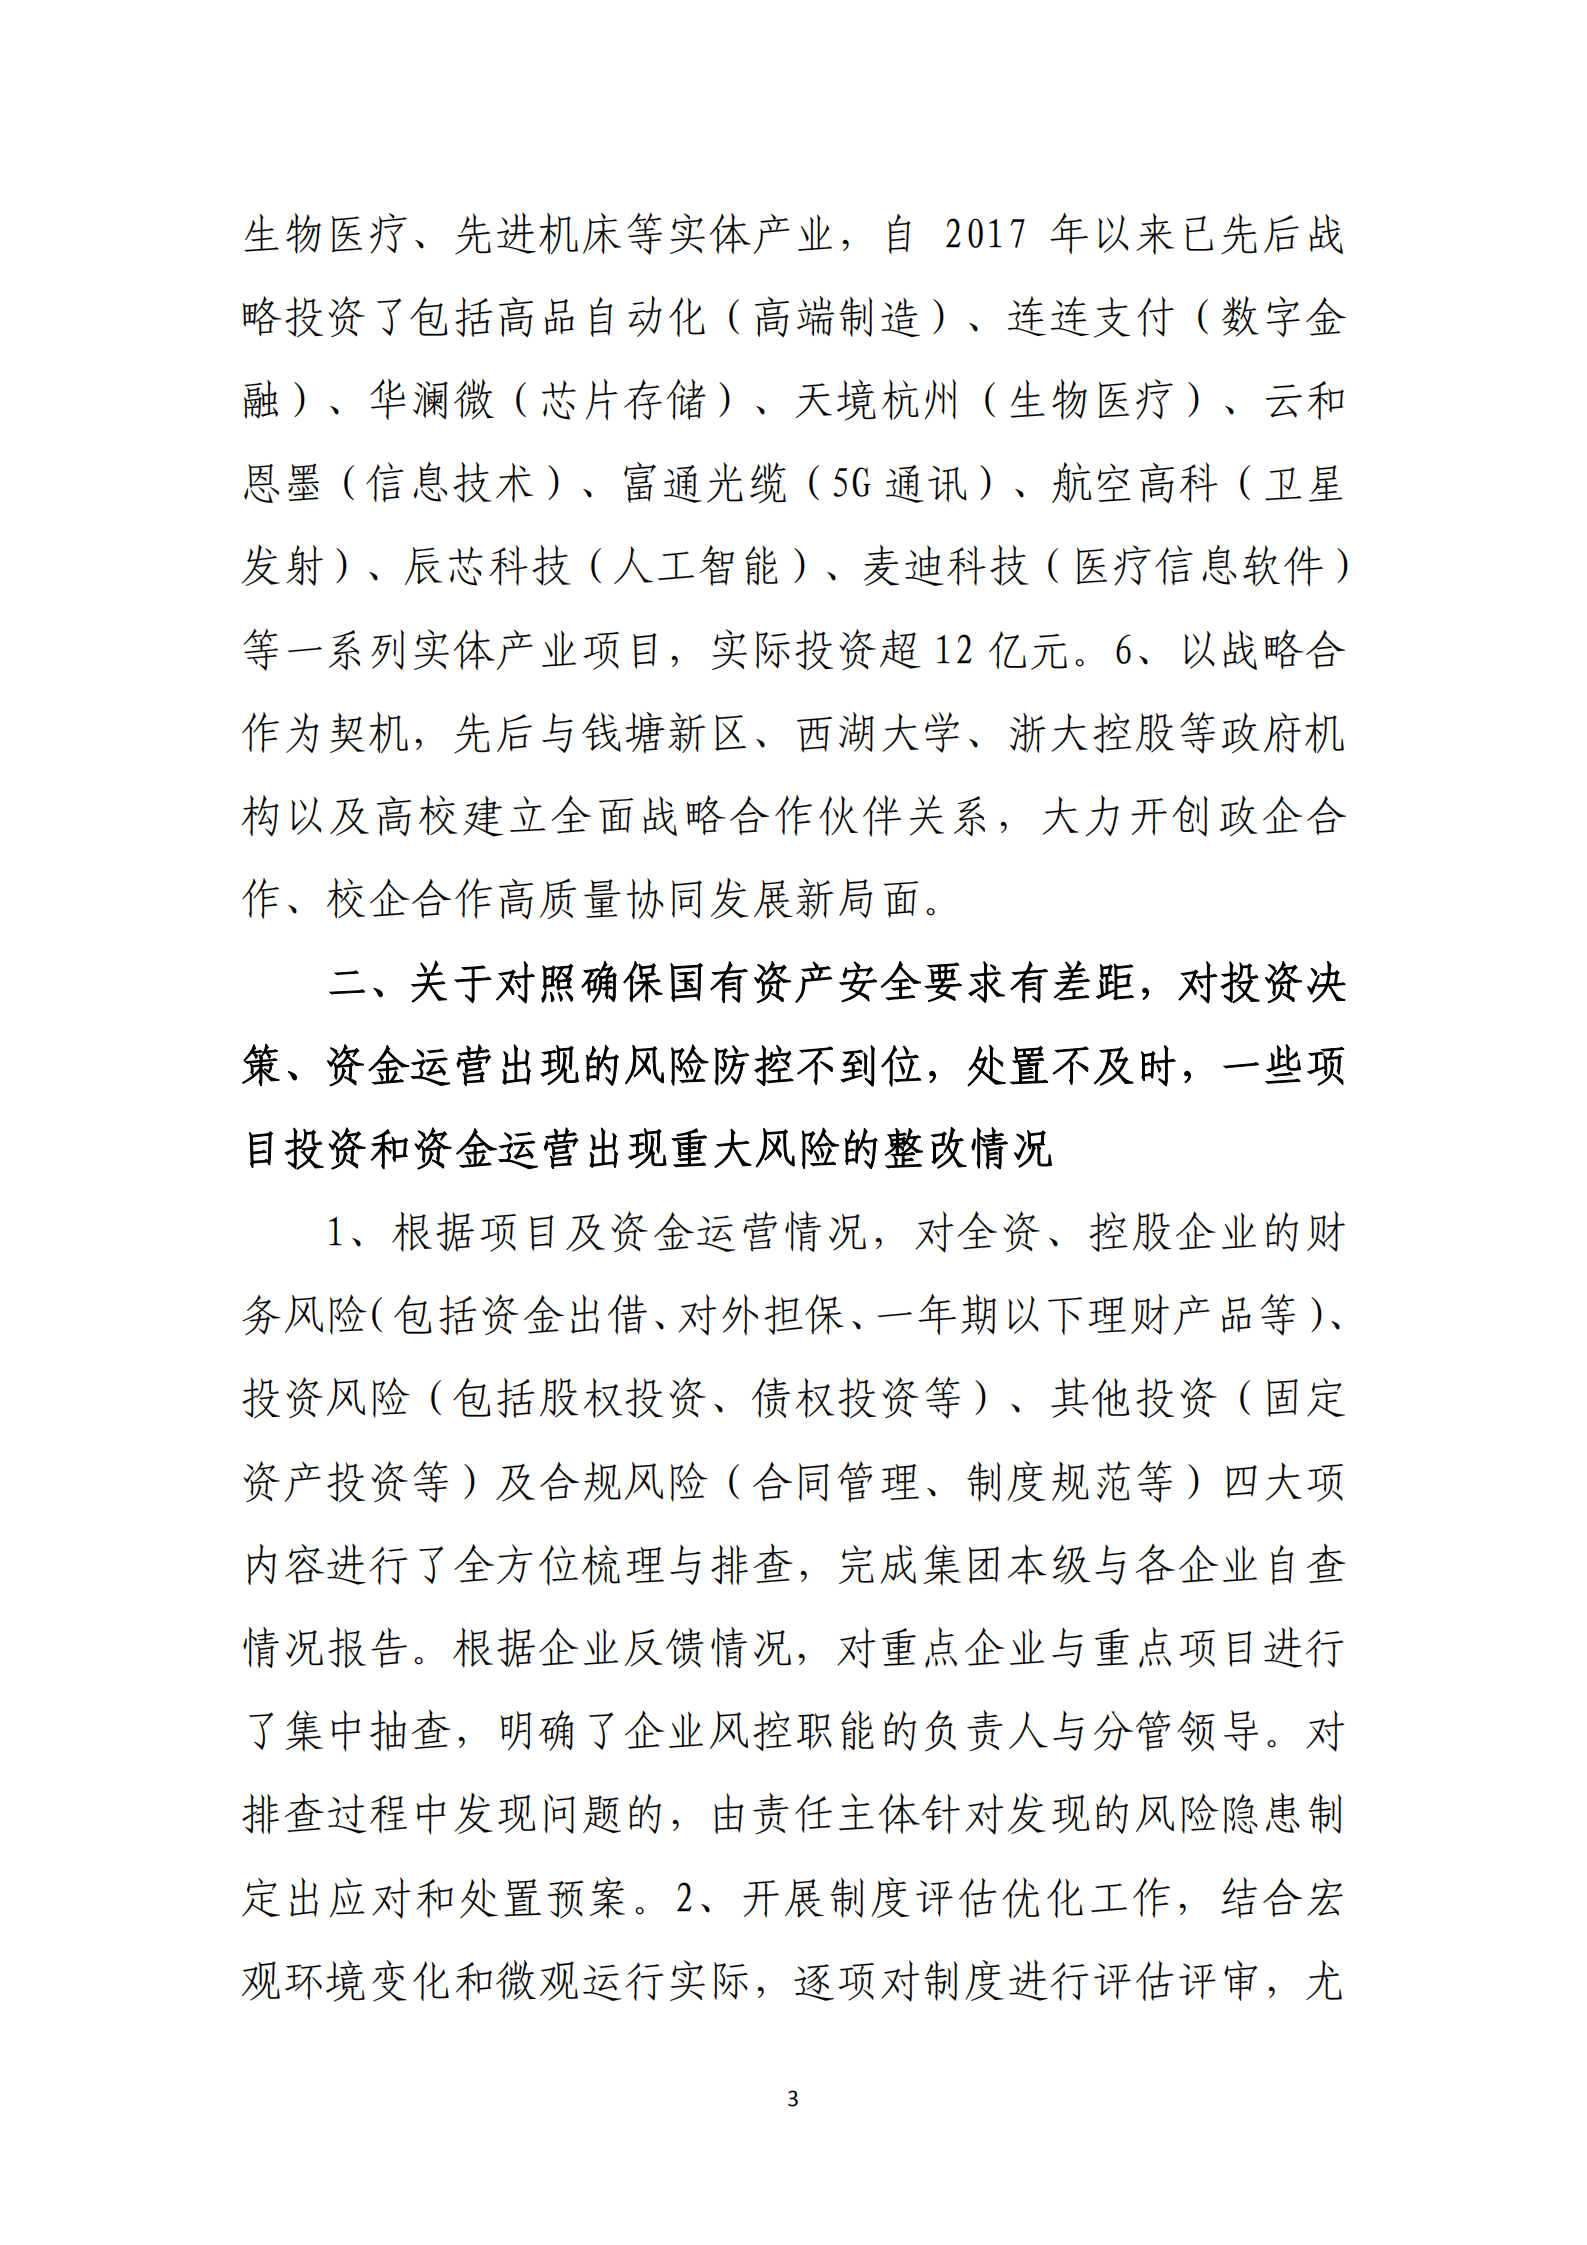 【体育365官方网站】中国有限公司党委关于巡察整改情况的通报_02.png